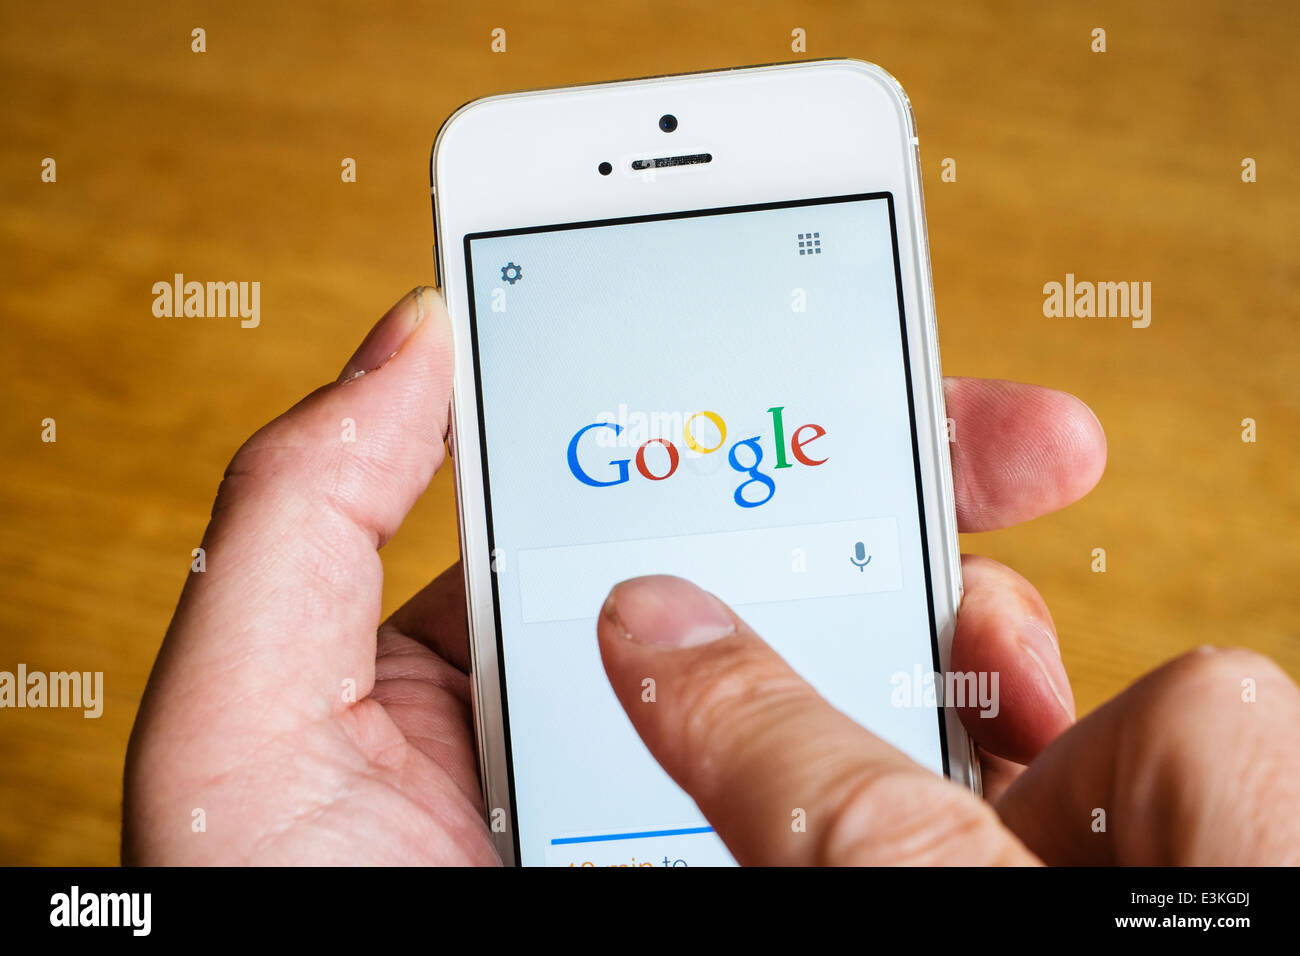 Dettaglio del motore di ricerca Google app homepage su iPhone smart phone Foto Stock